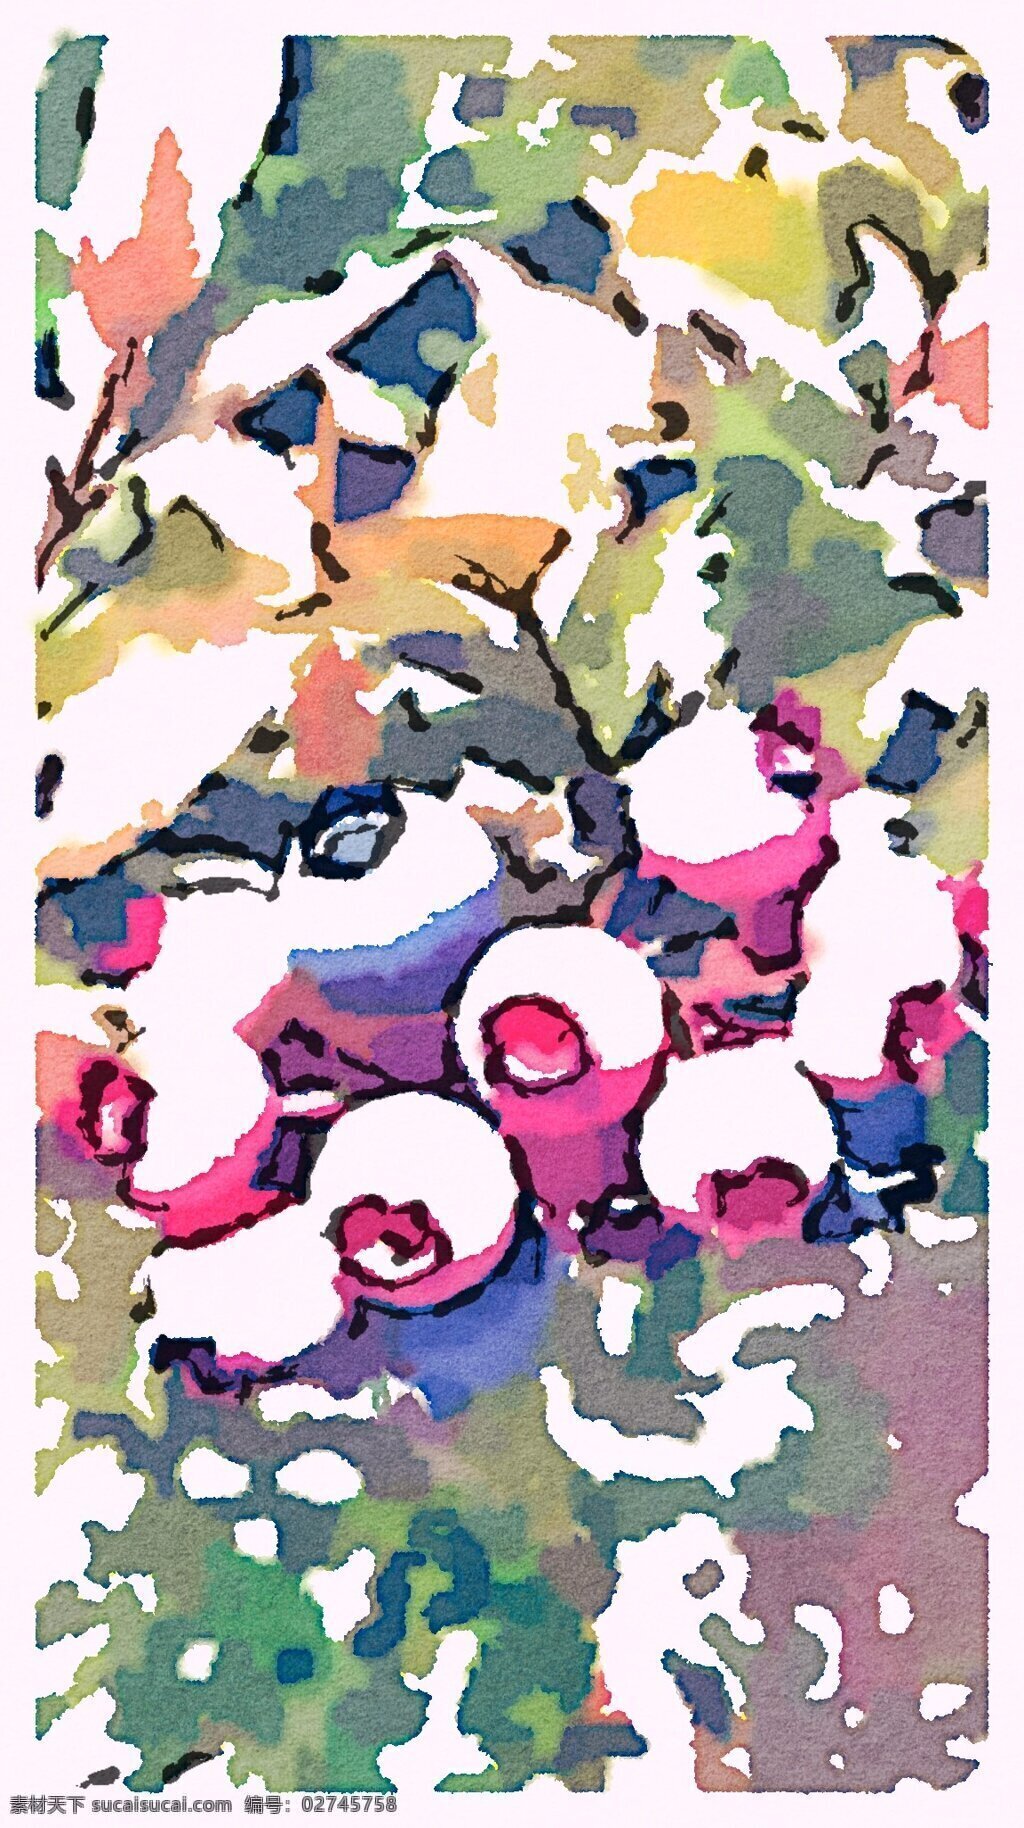 水墨晕染 蓝莓 蓝莓果实 蓝莓诱人 水果 文化艺术 绘画书法